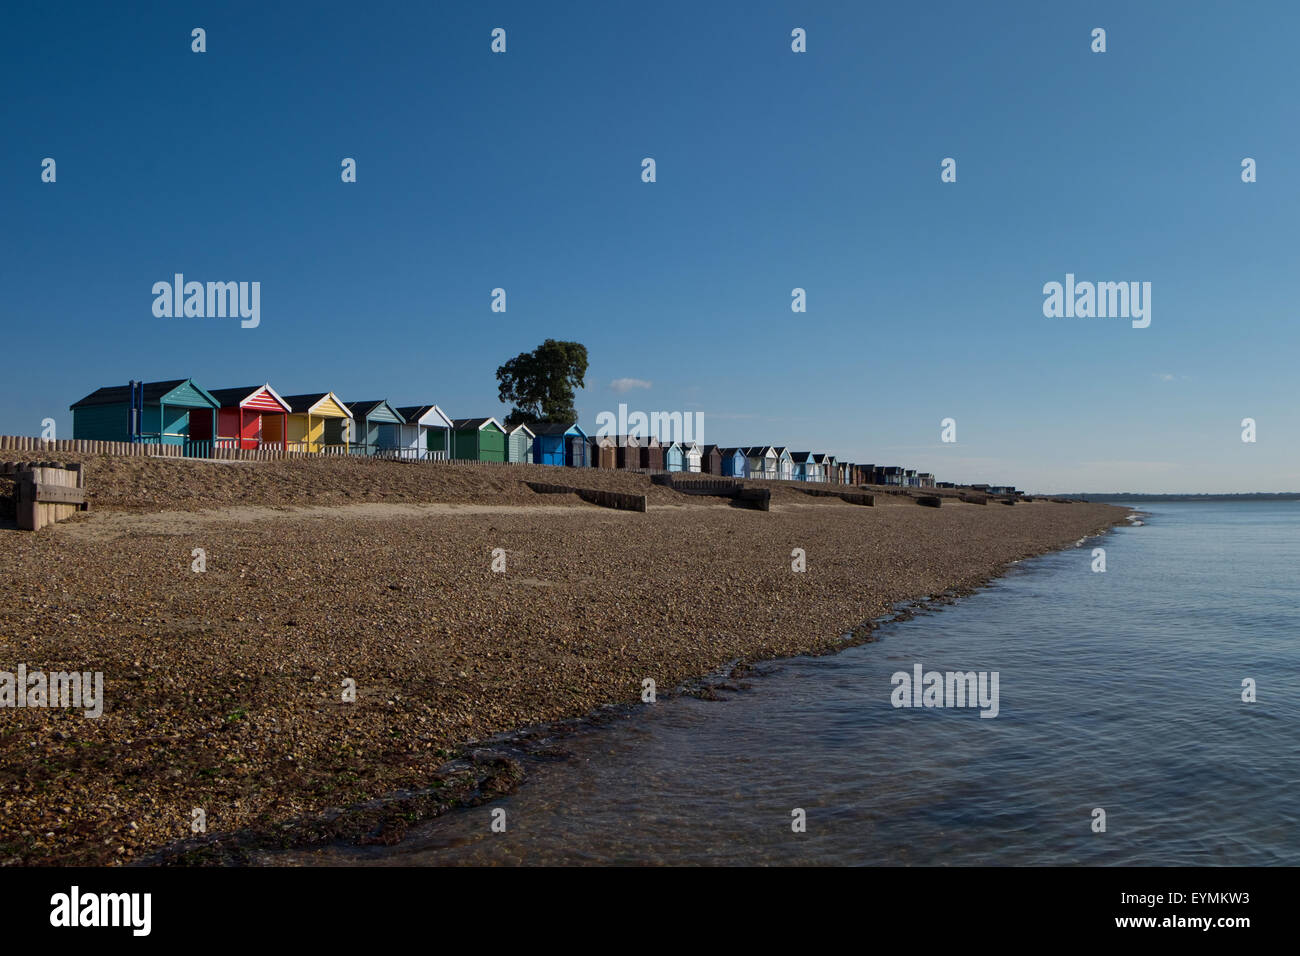 Calshot Beach and Beach Huts at Calshot in Hampshire UK Stock Photo